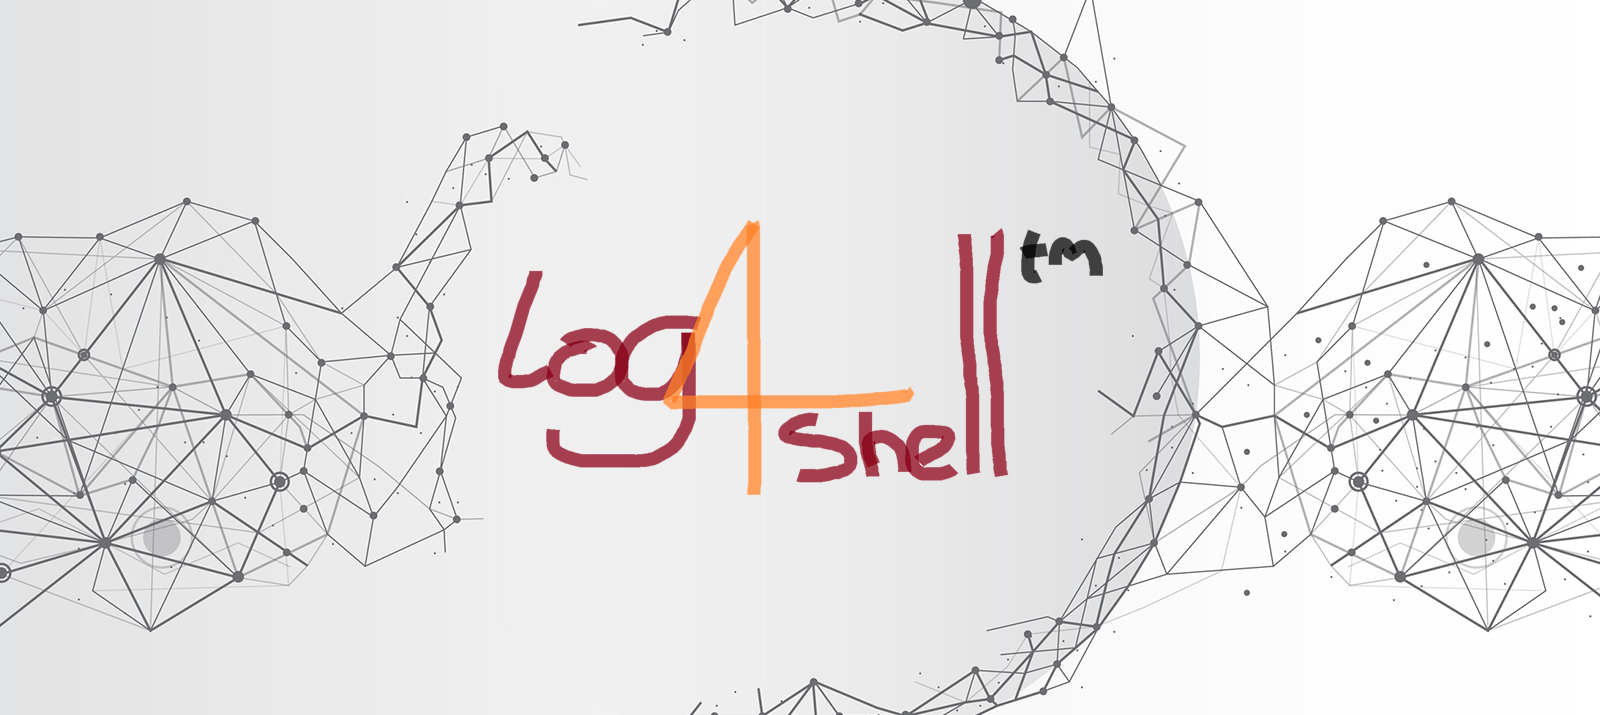 Apache log4shell log4j